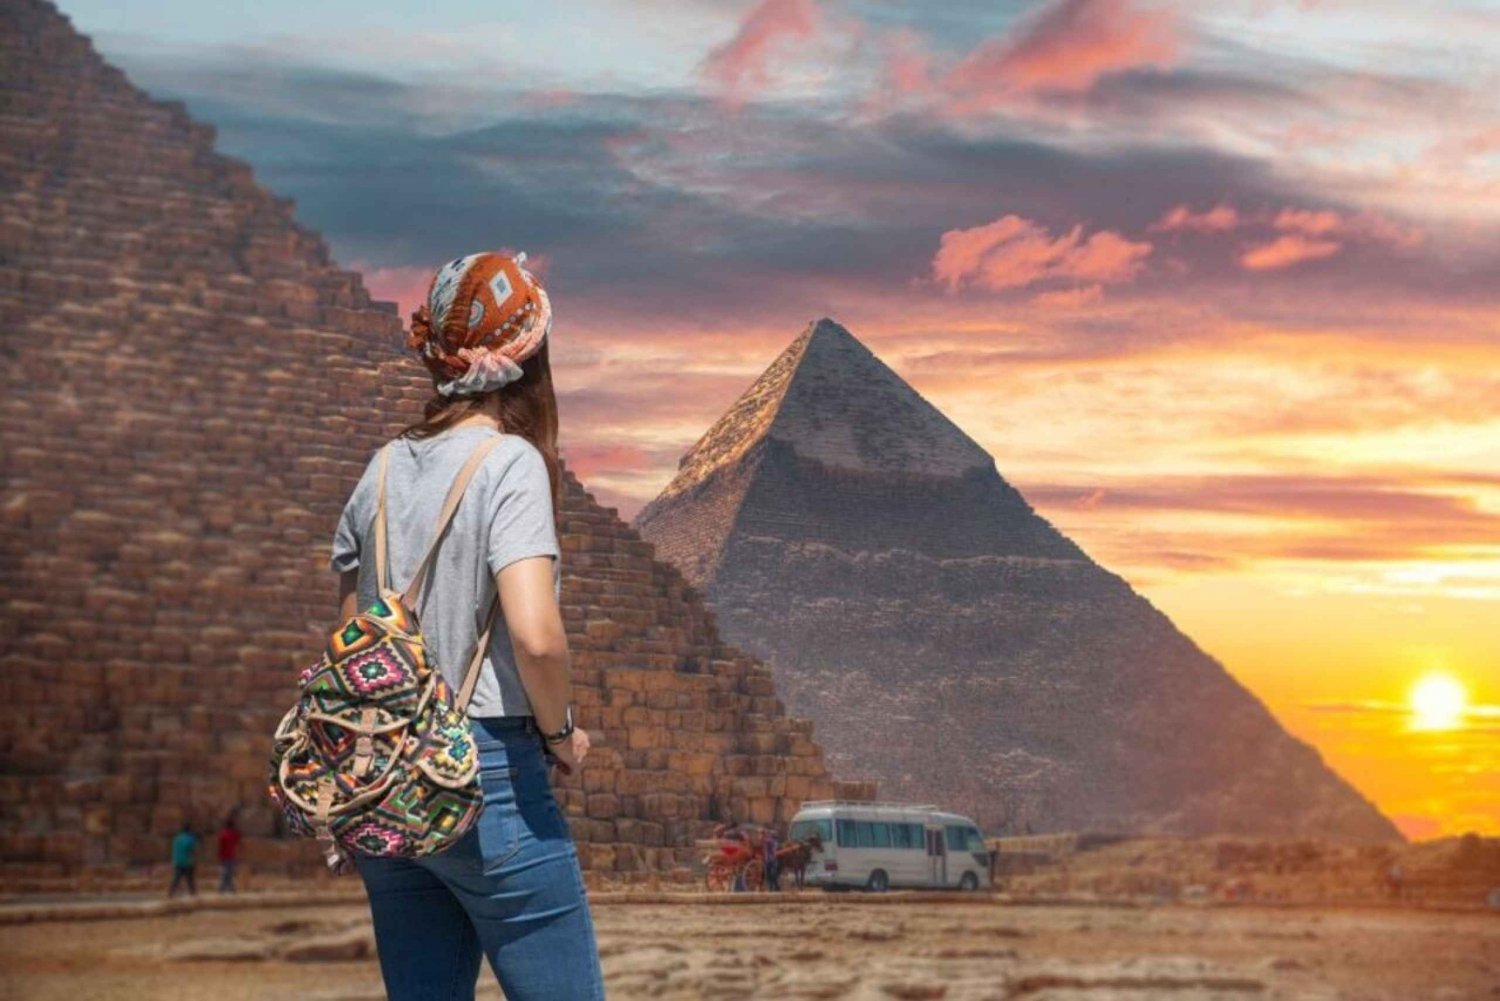 Sahl Hasheesh: Gizan kohokohdat päiväretki lounaalla: Kairon ja Gizan päiväretki lounaalla